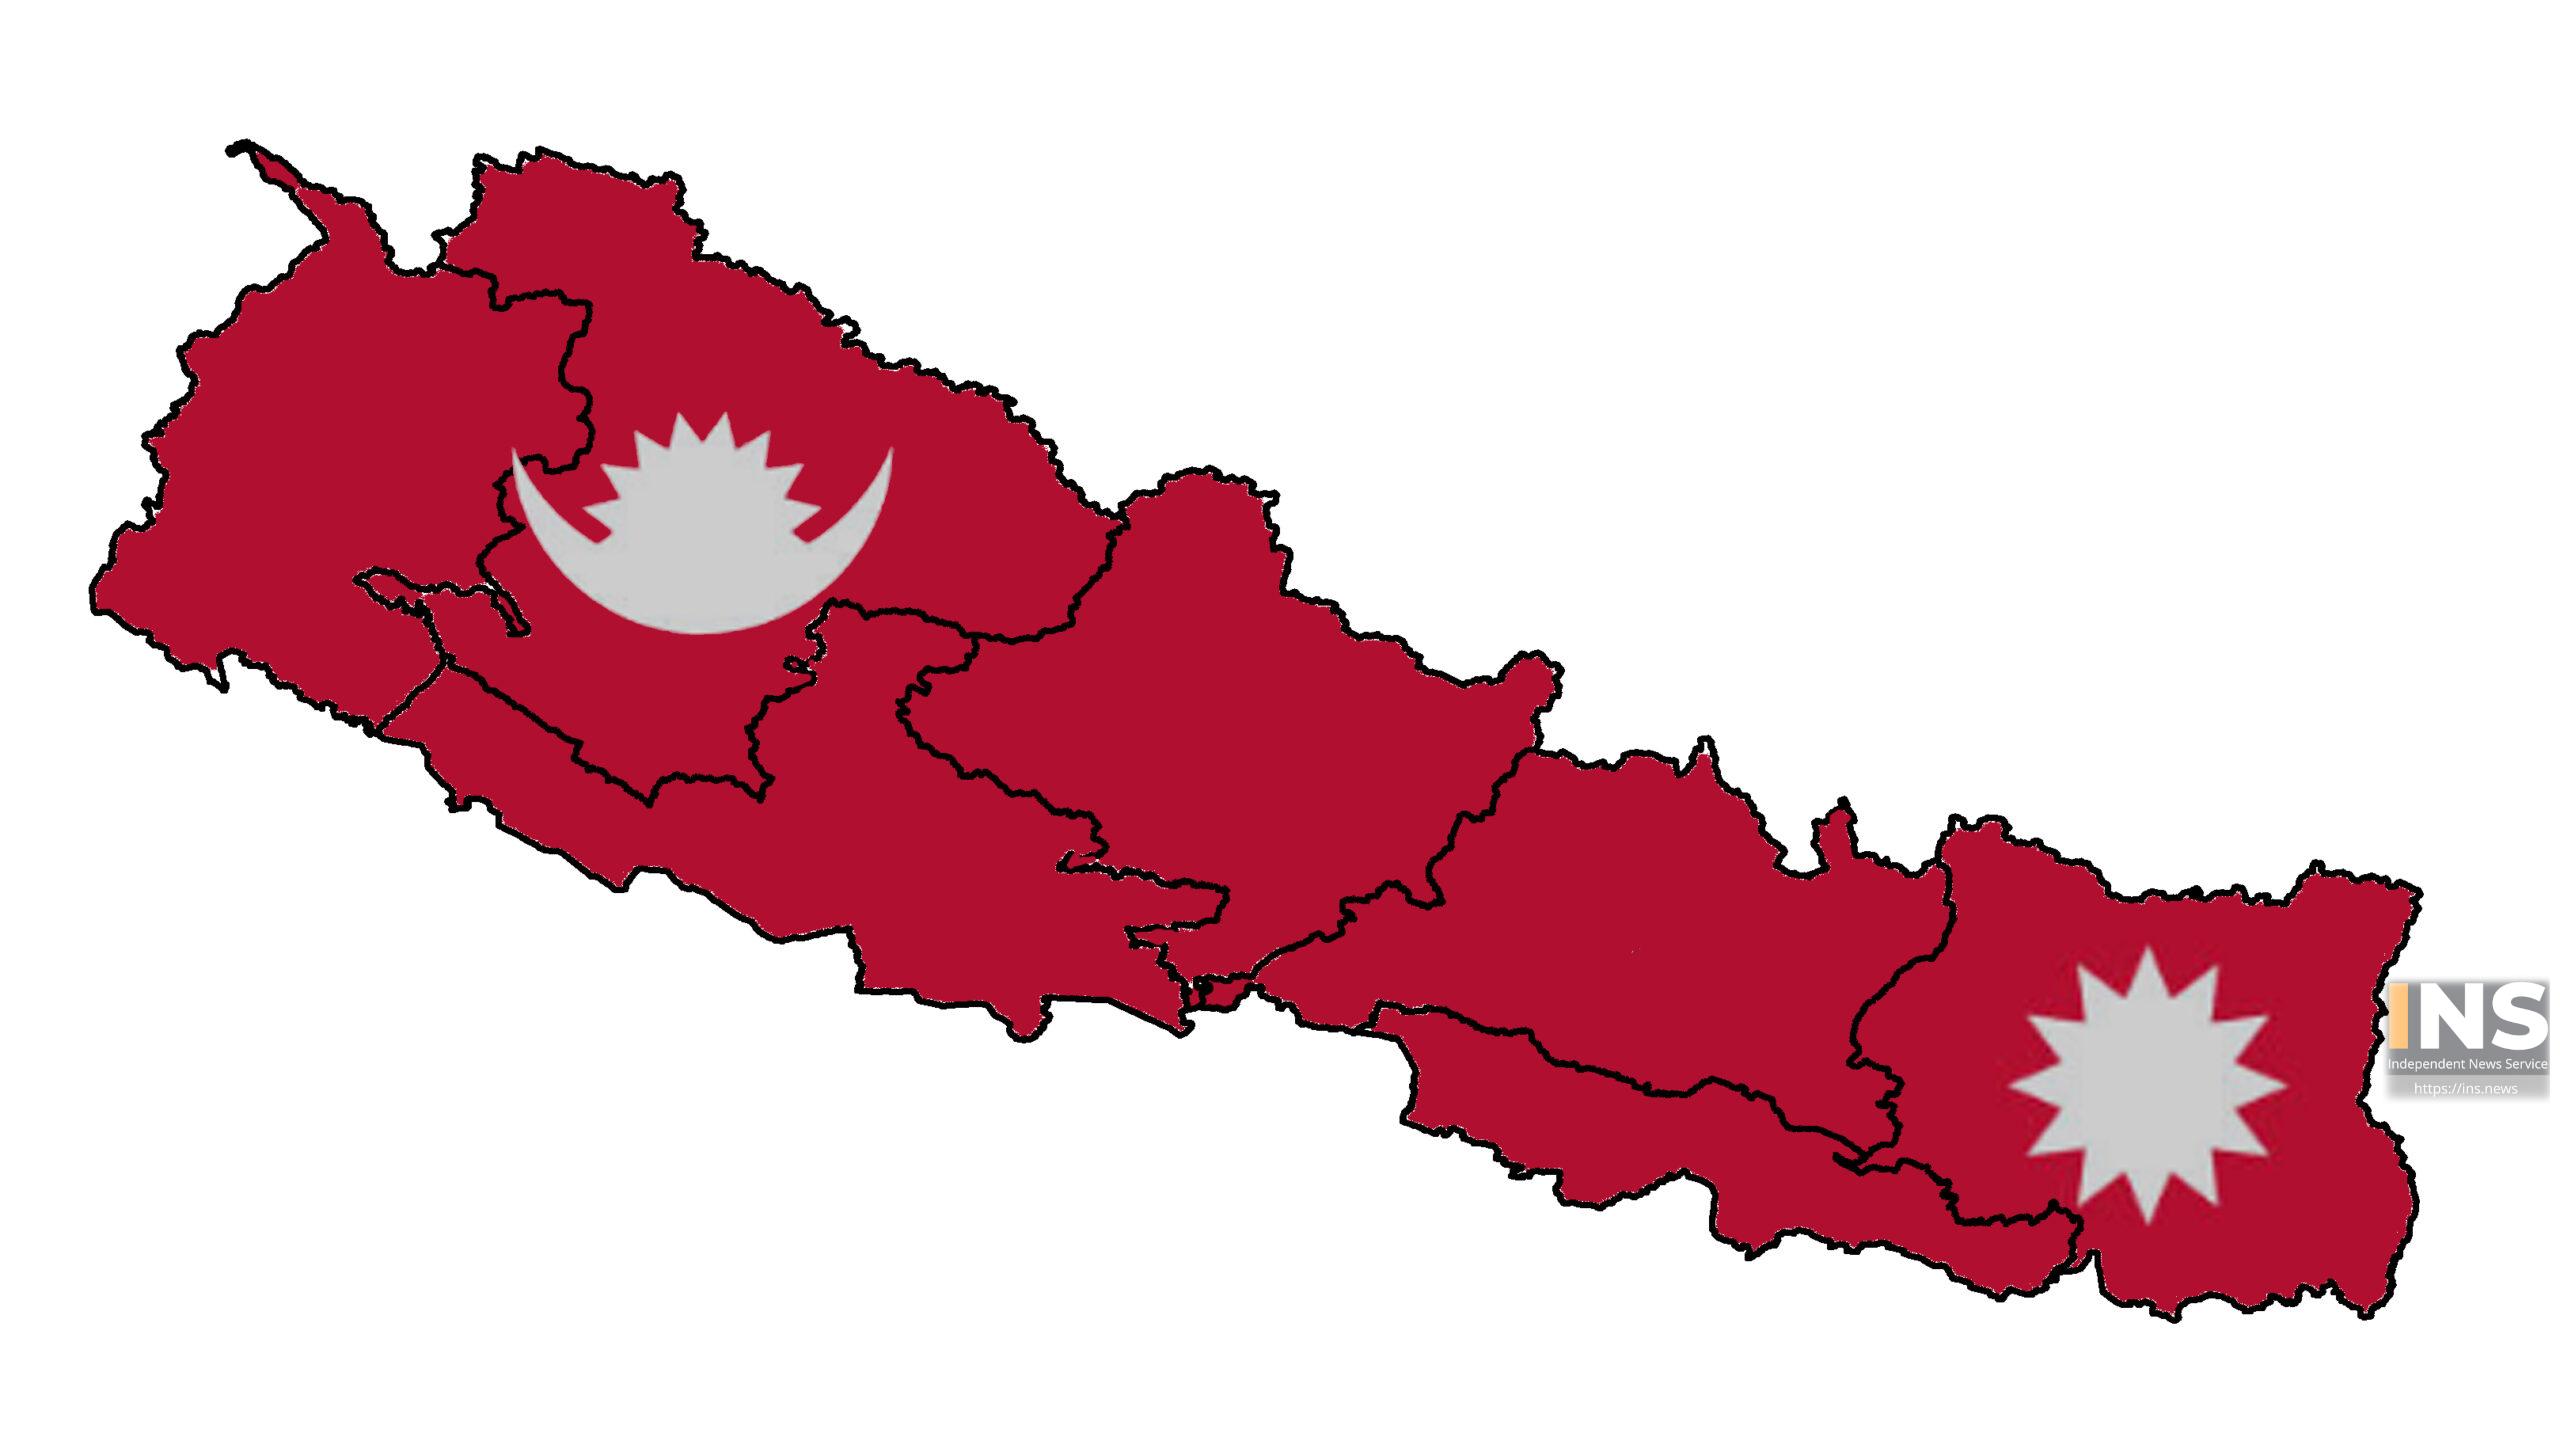 फोस्साको राज्य हो नेपाल?